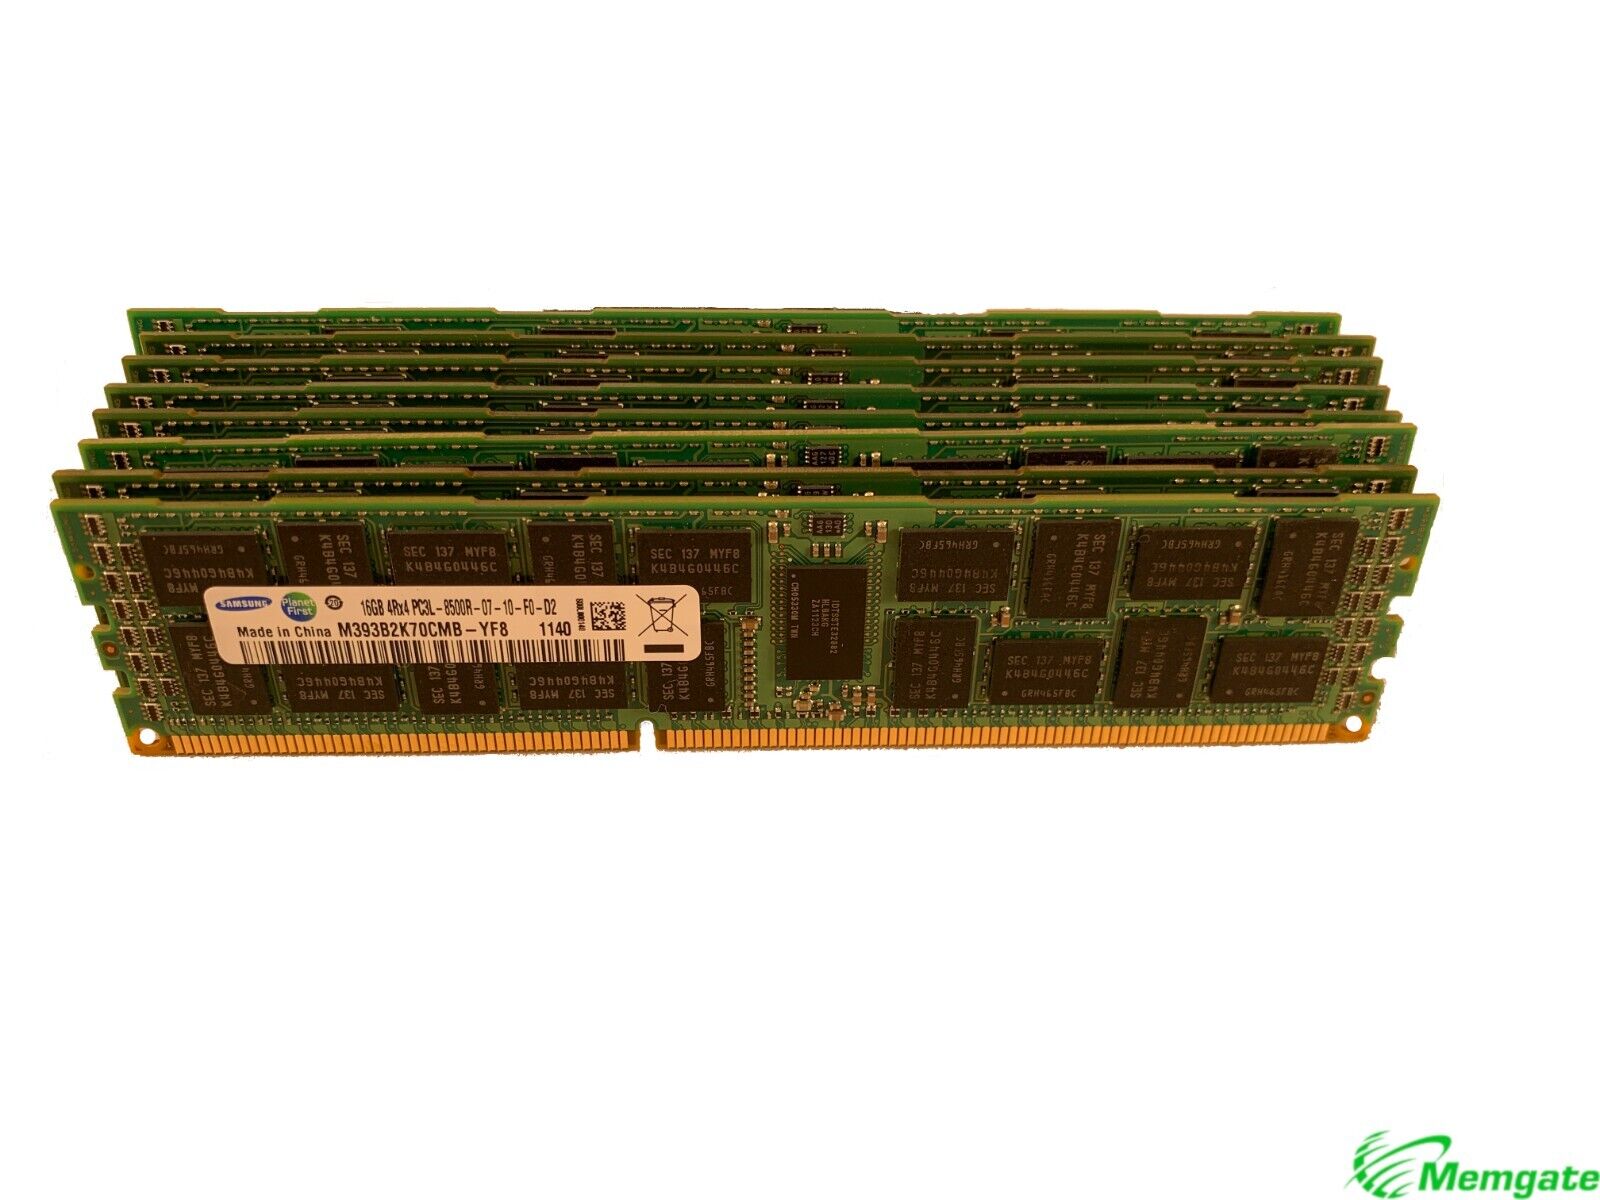 192GB (12x16GB) DDR3 PC3-8500R 4Rx4 ECC Server Memory For Dell PowerEdge R710 